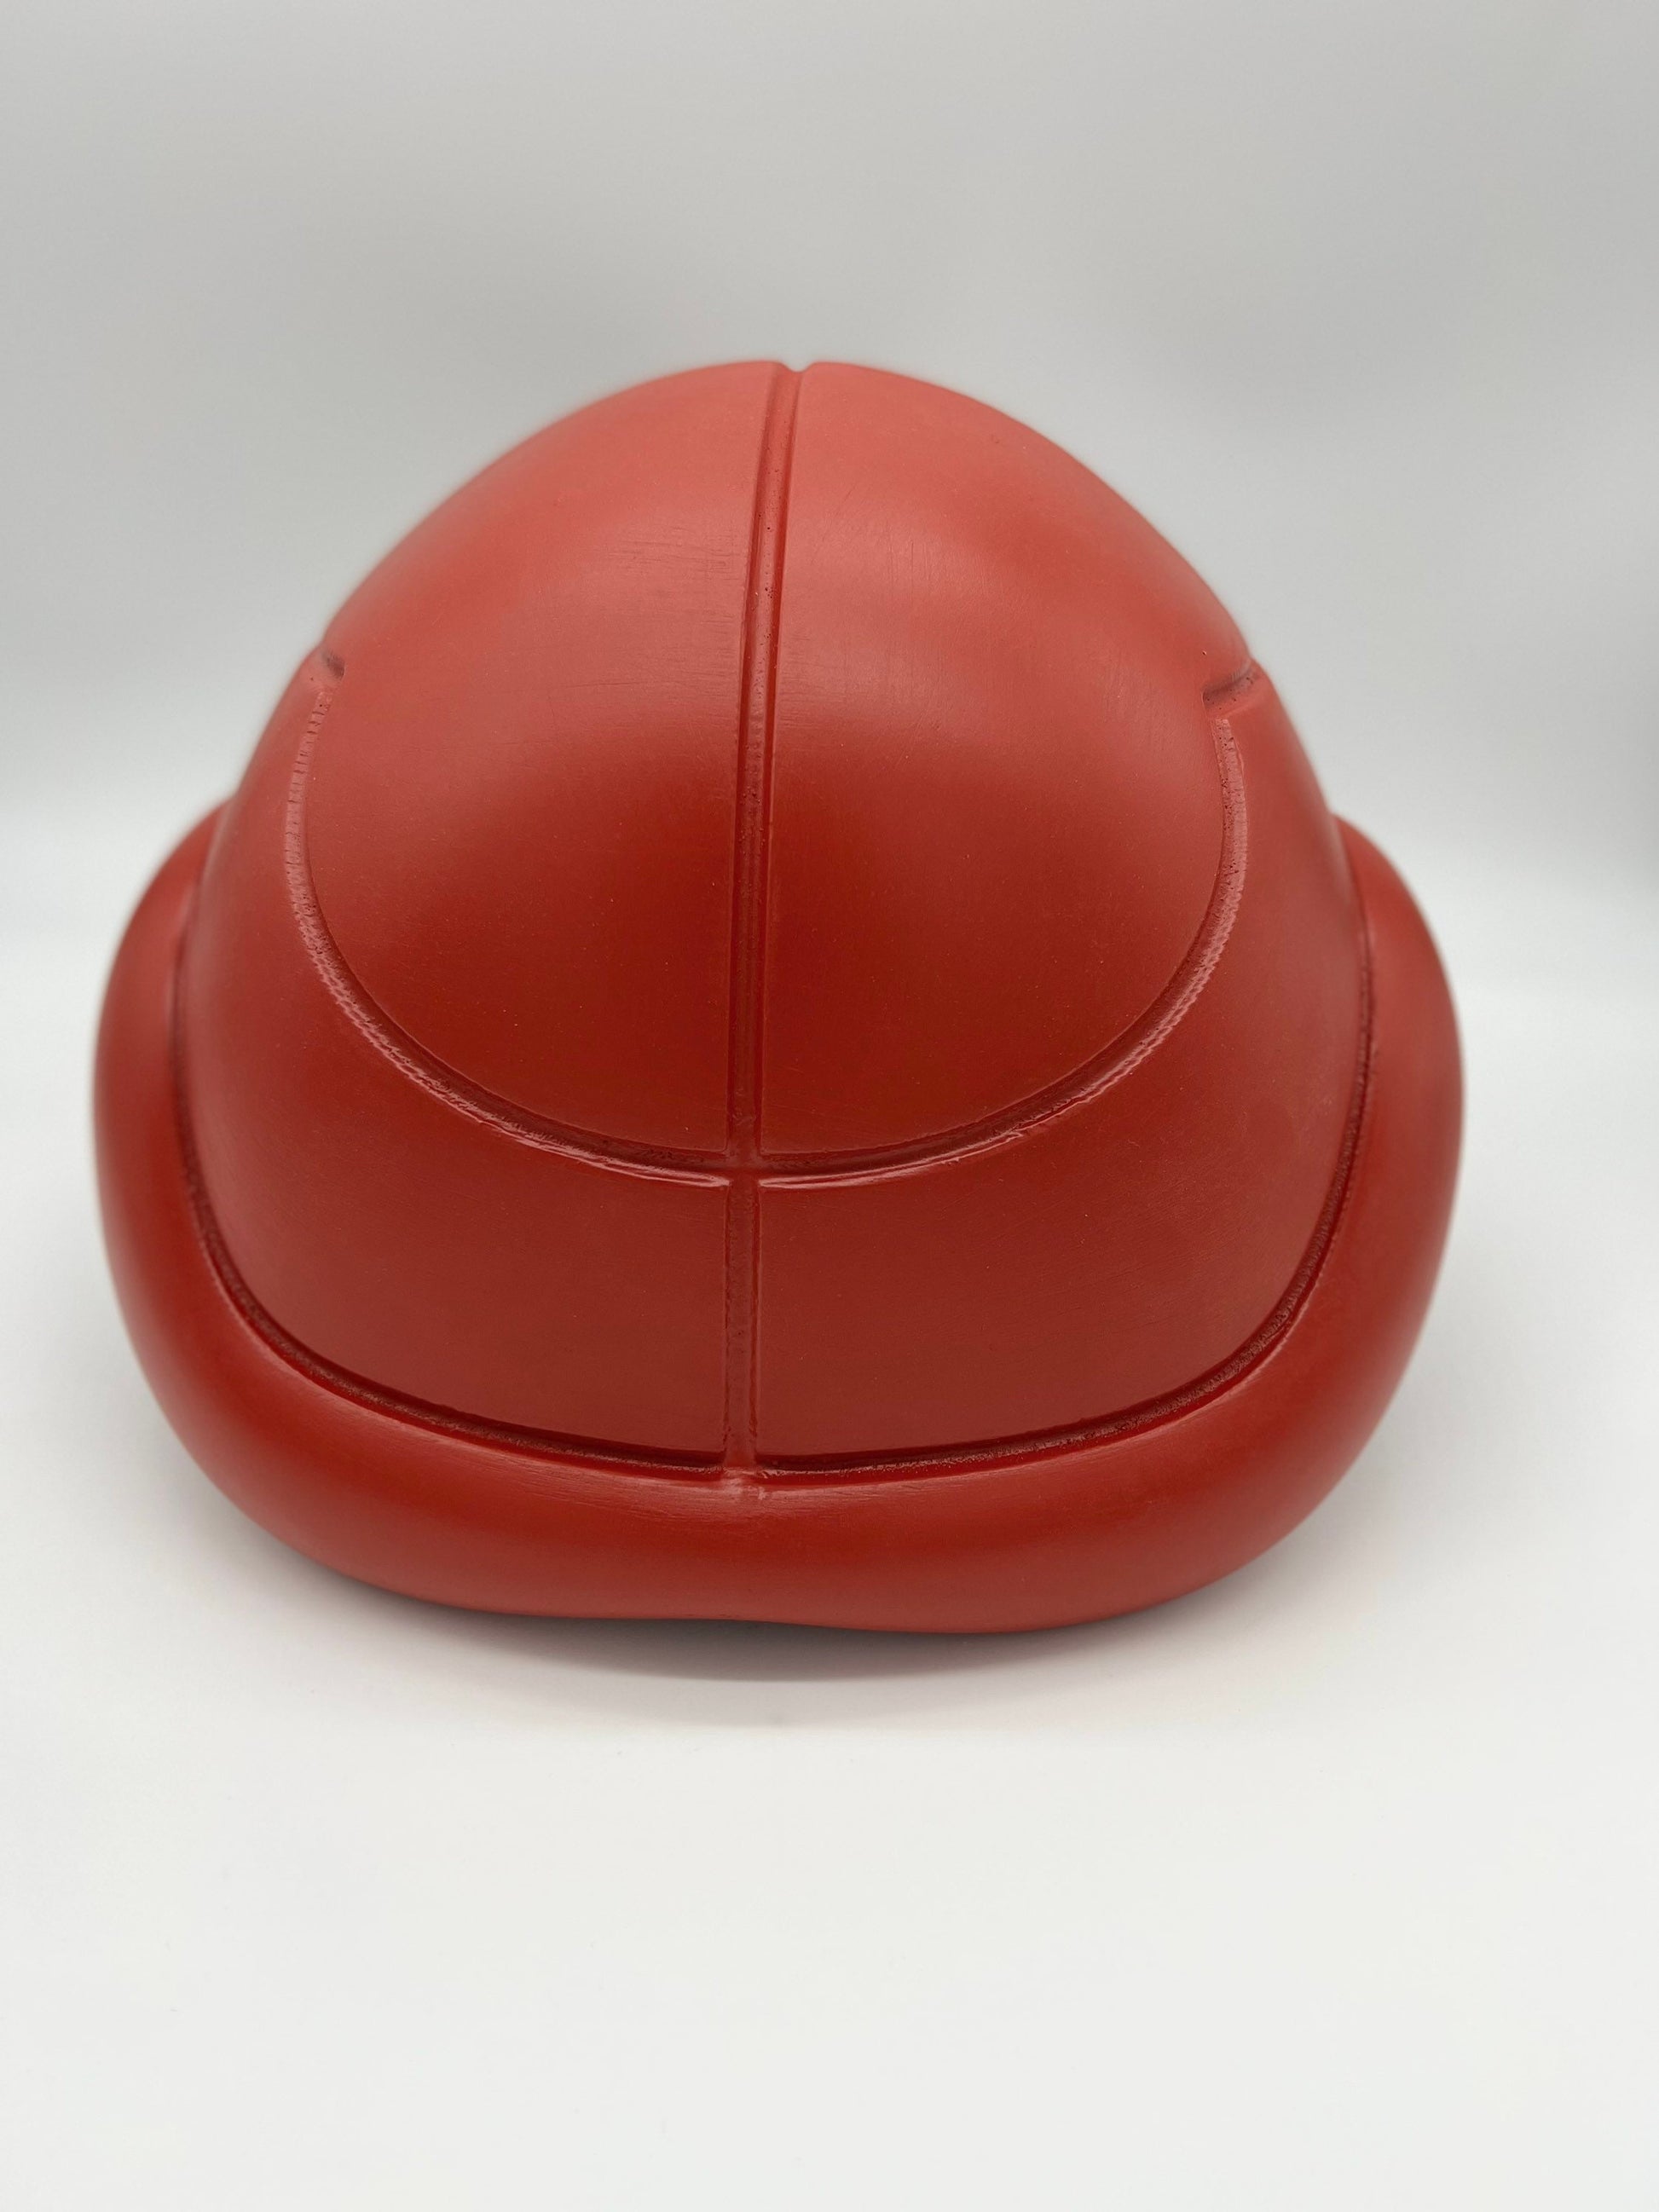 Metriod Samus Cosplay Helmet